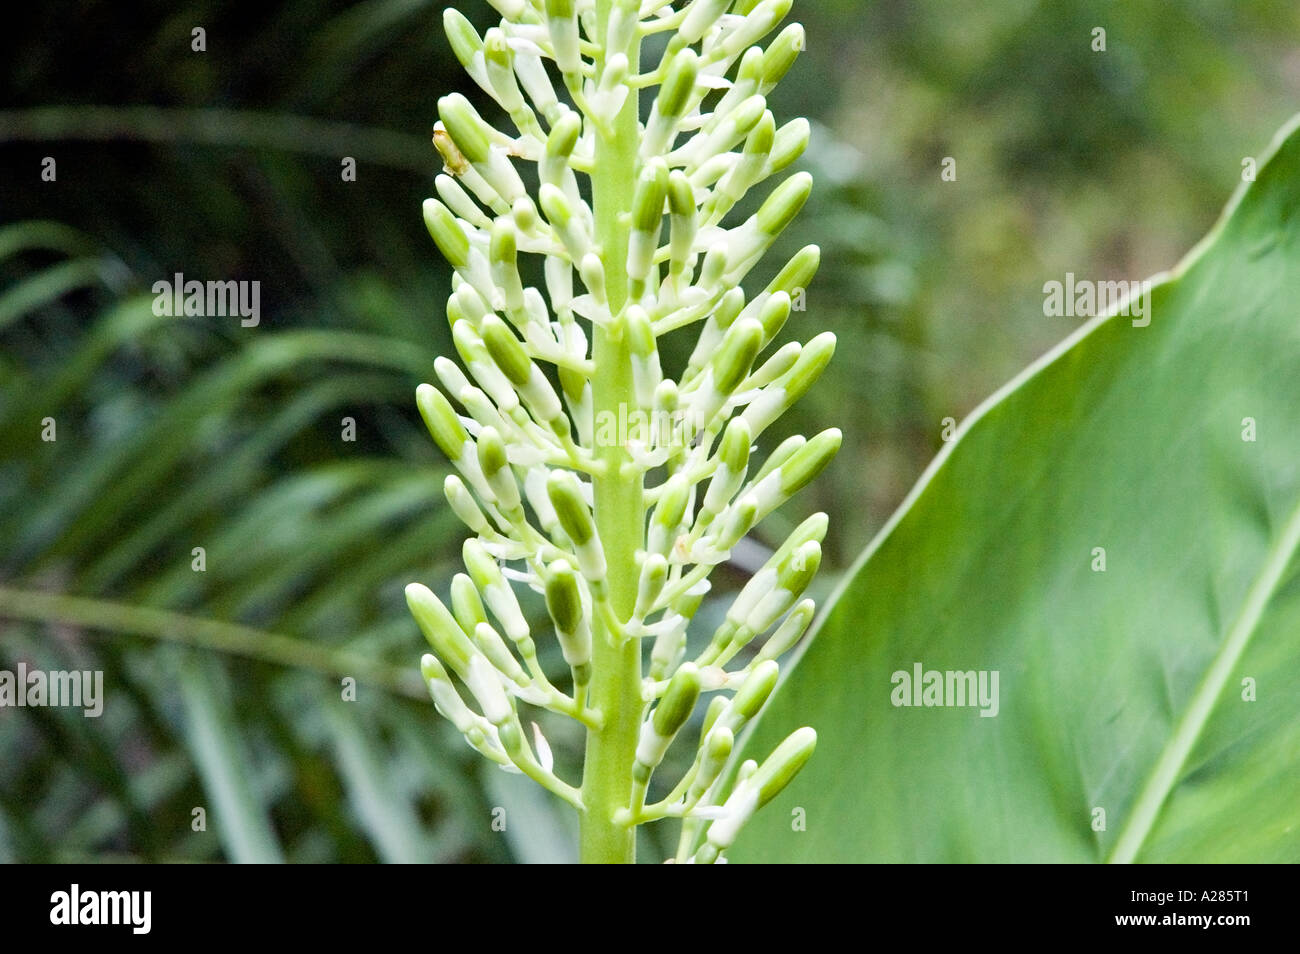 Alpinia galanga hi-res stock photography and images - Alamy